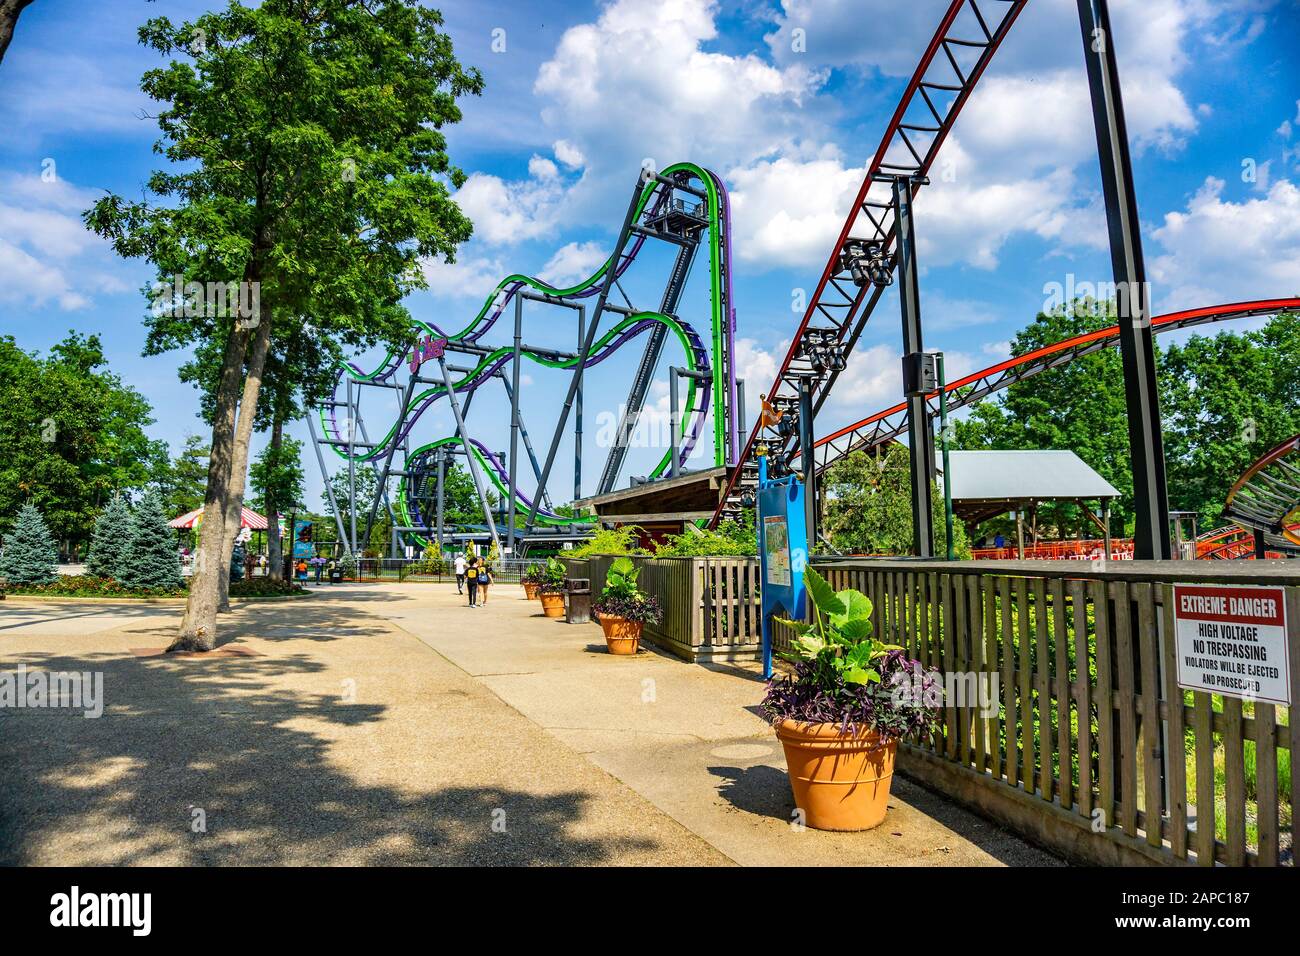 Les clients qui s'amusent à Six Flags Great Adventure, un célèbre parc d' attractions situé dans le canton de Jackson, dans le New Jersey Photo Stock  - Alamy